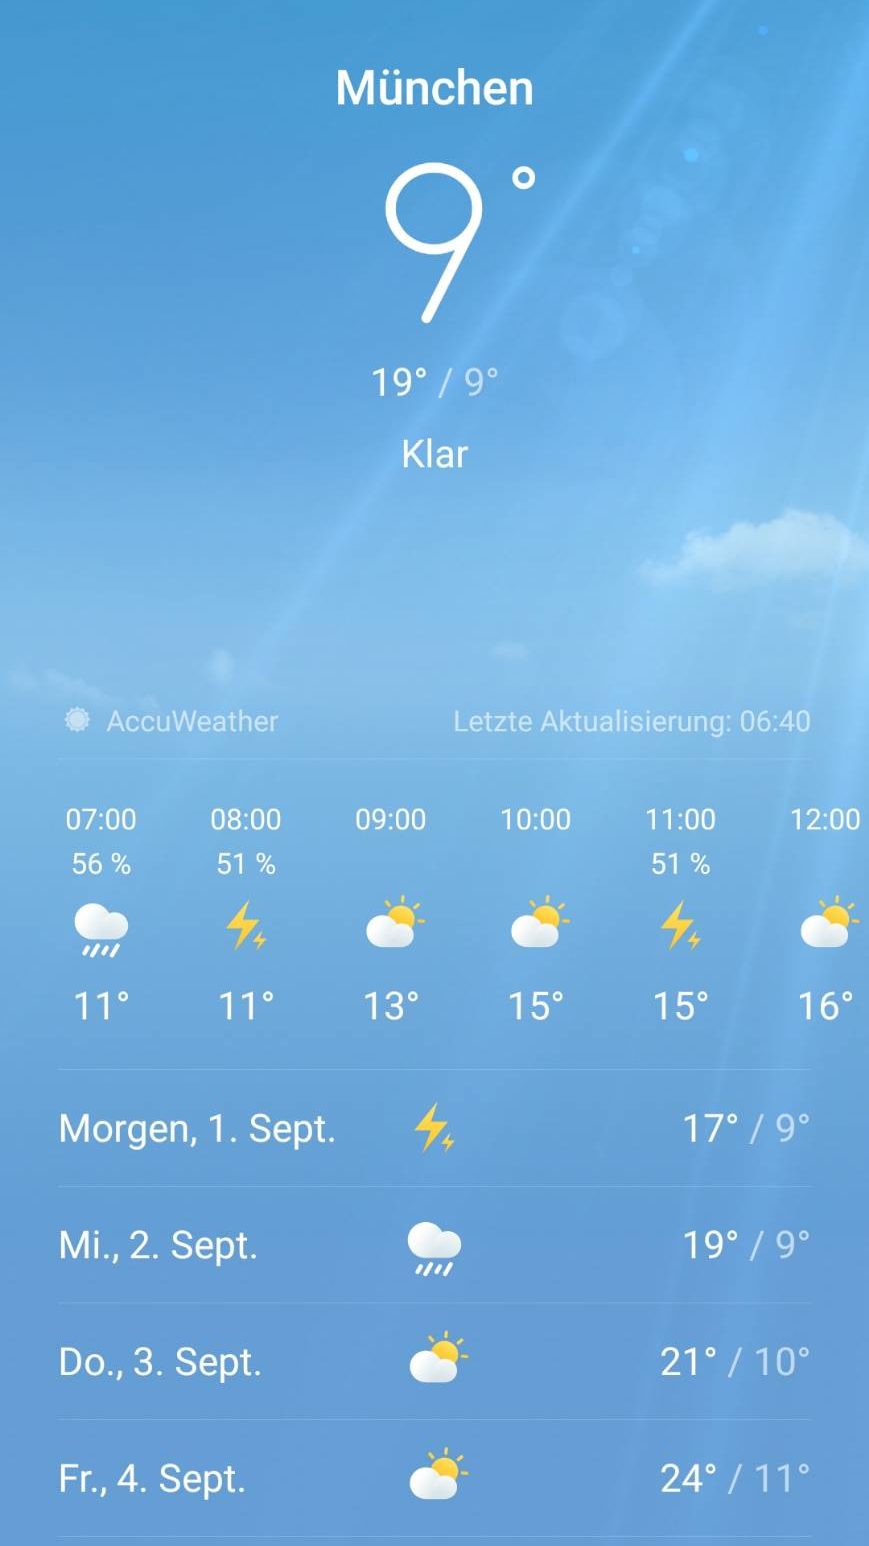 ミュンヘンの夏は暑いし寒い。ミュンヘンの天気は山の天気。